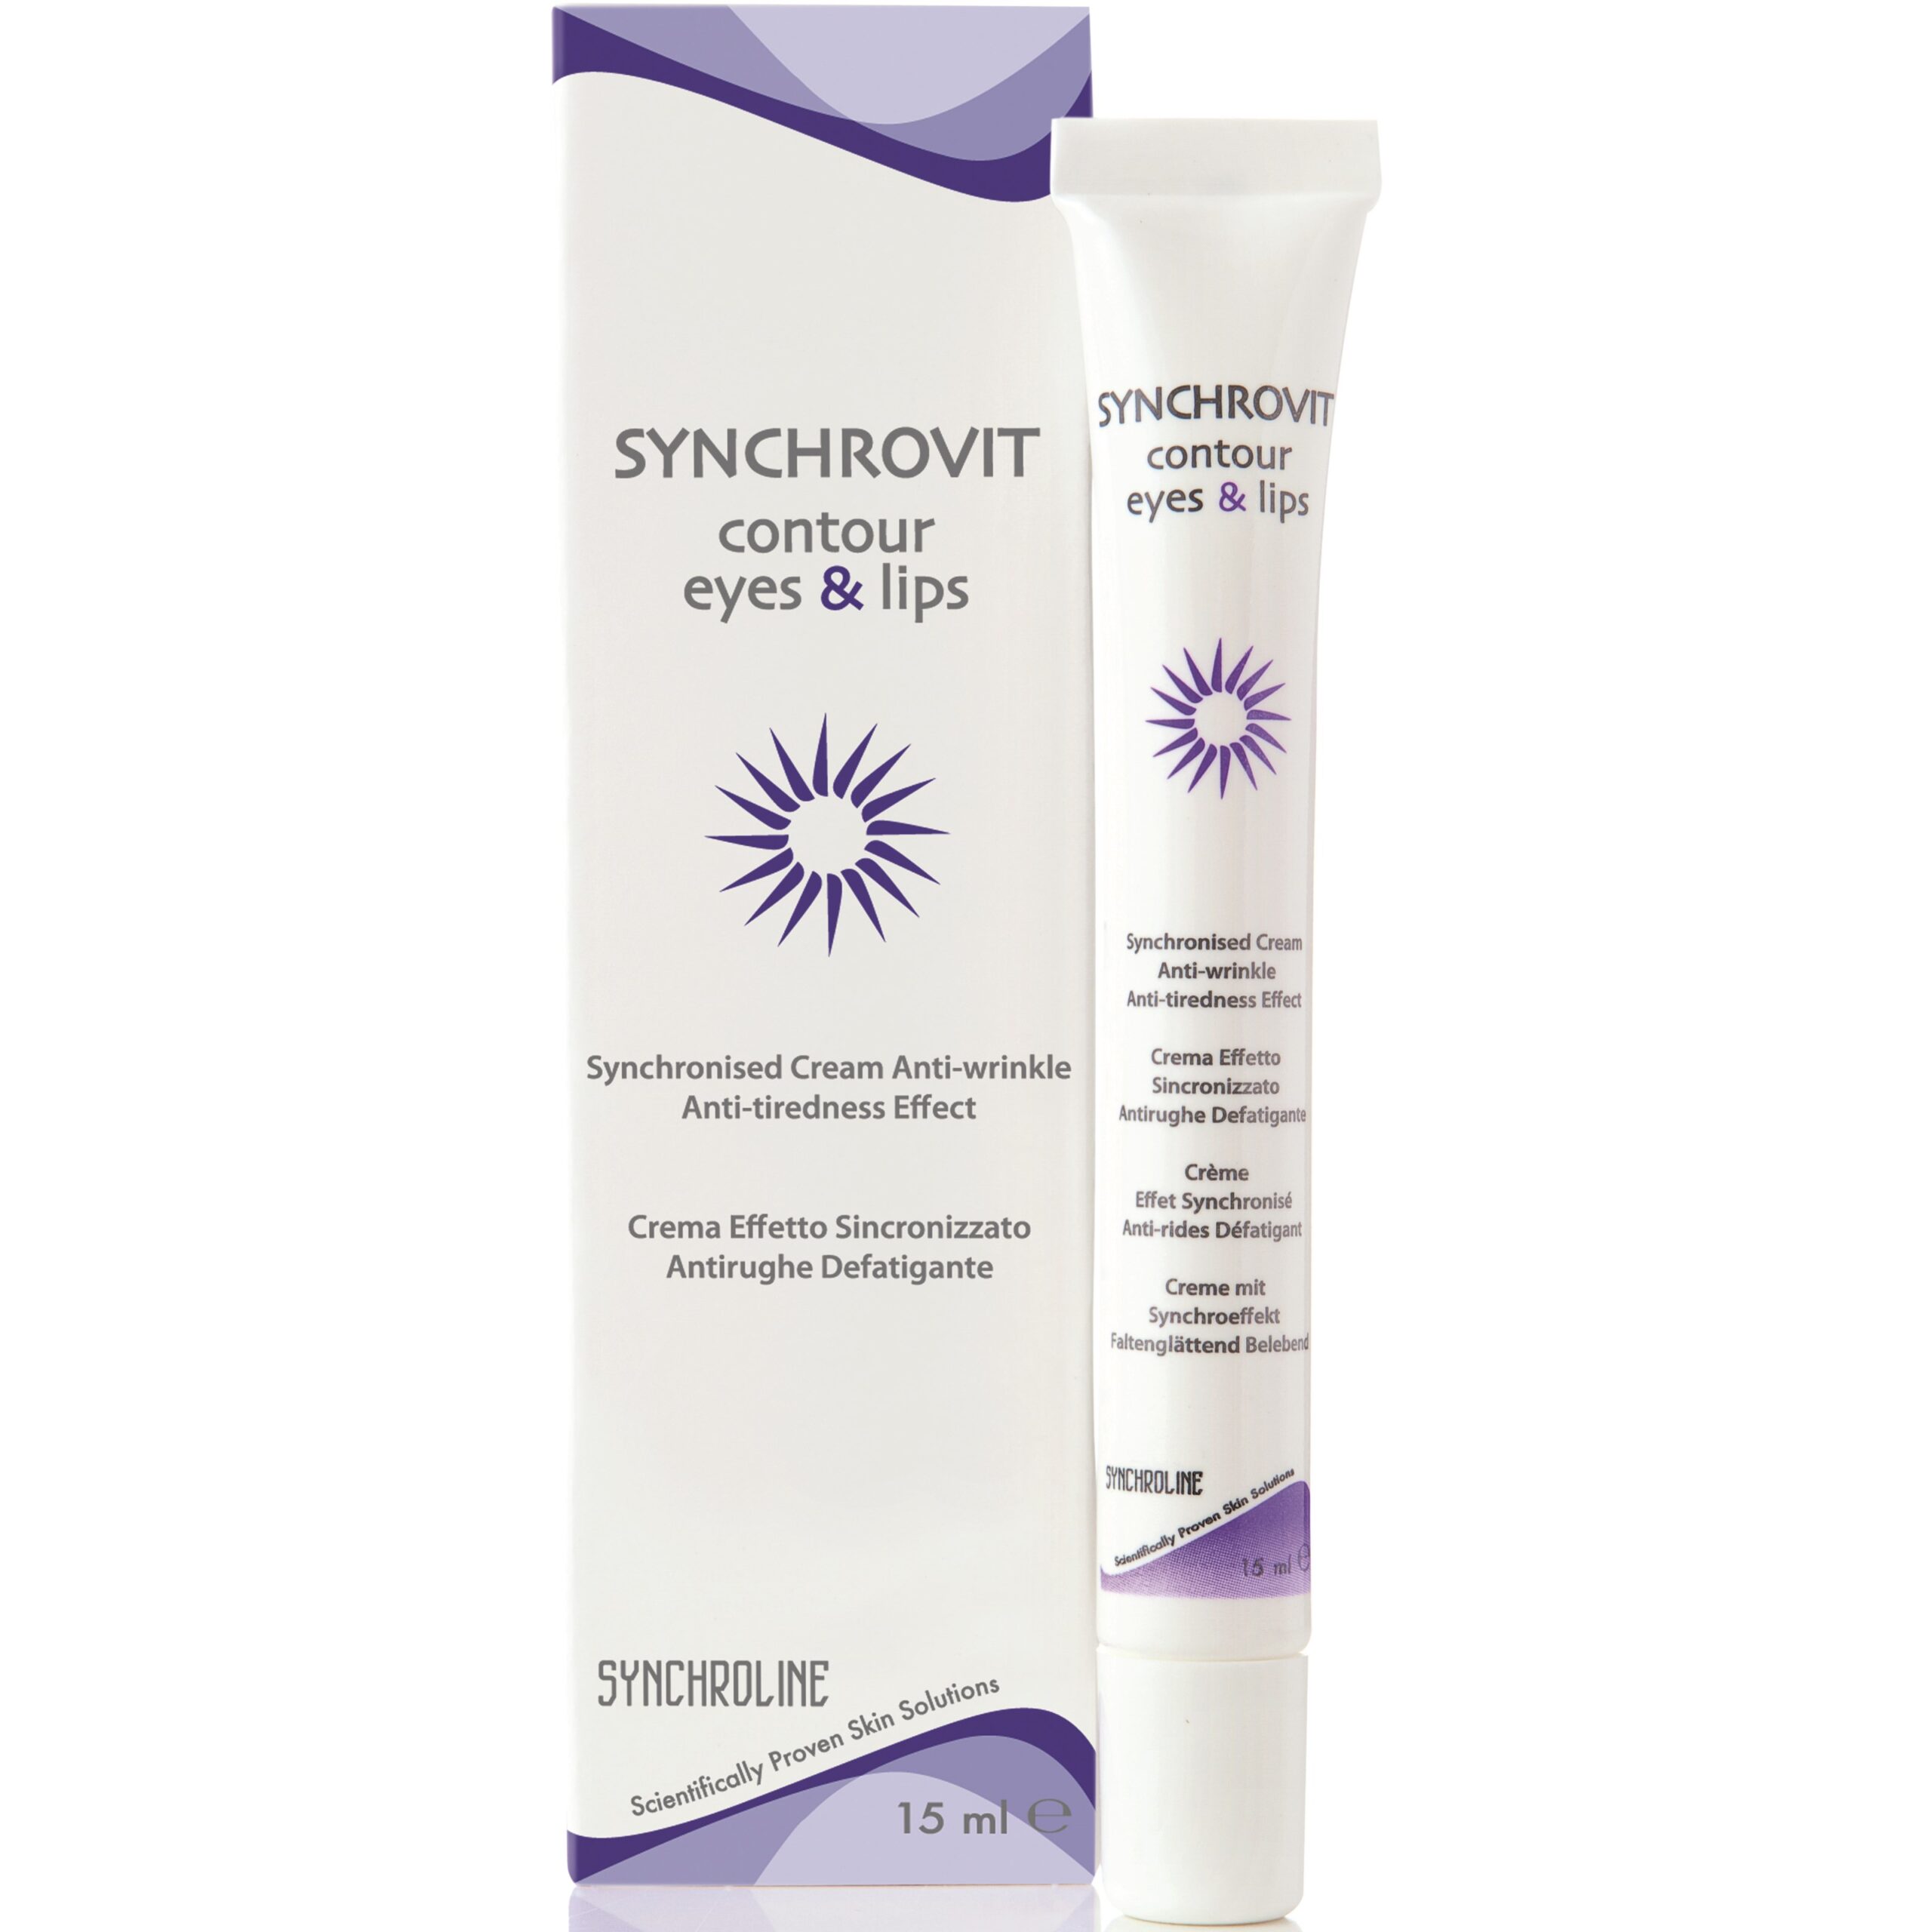 Synchroline Synchrovit Contour Eyes & Lips 15 ml